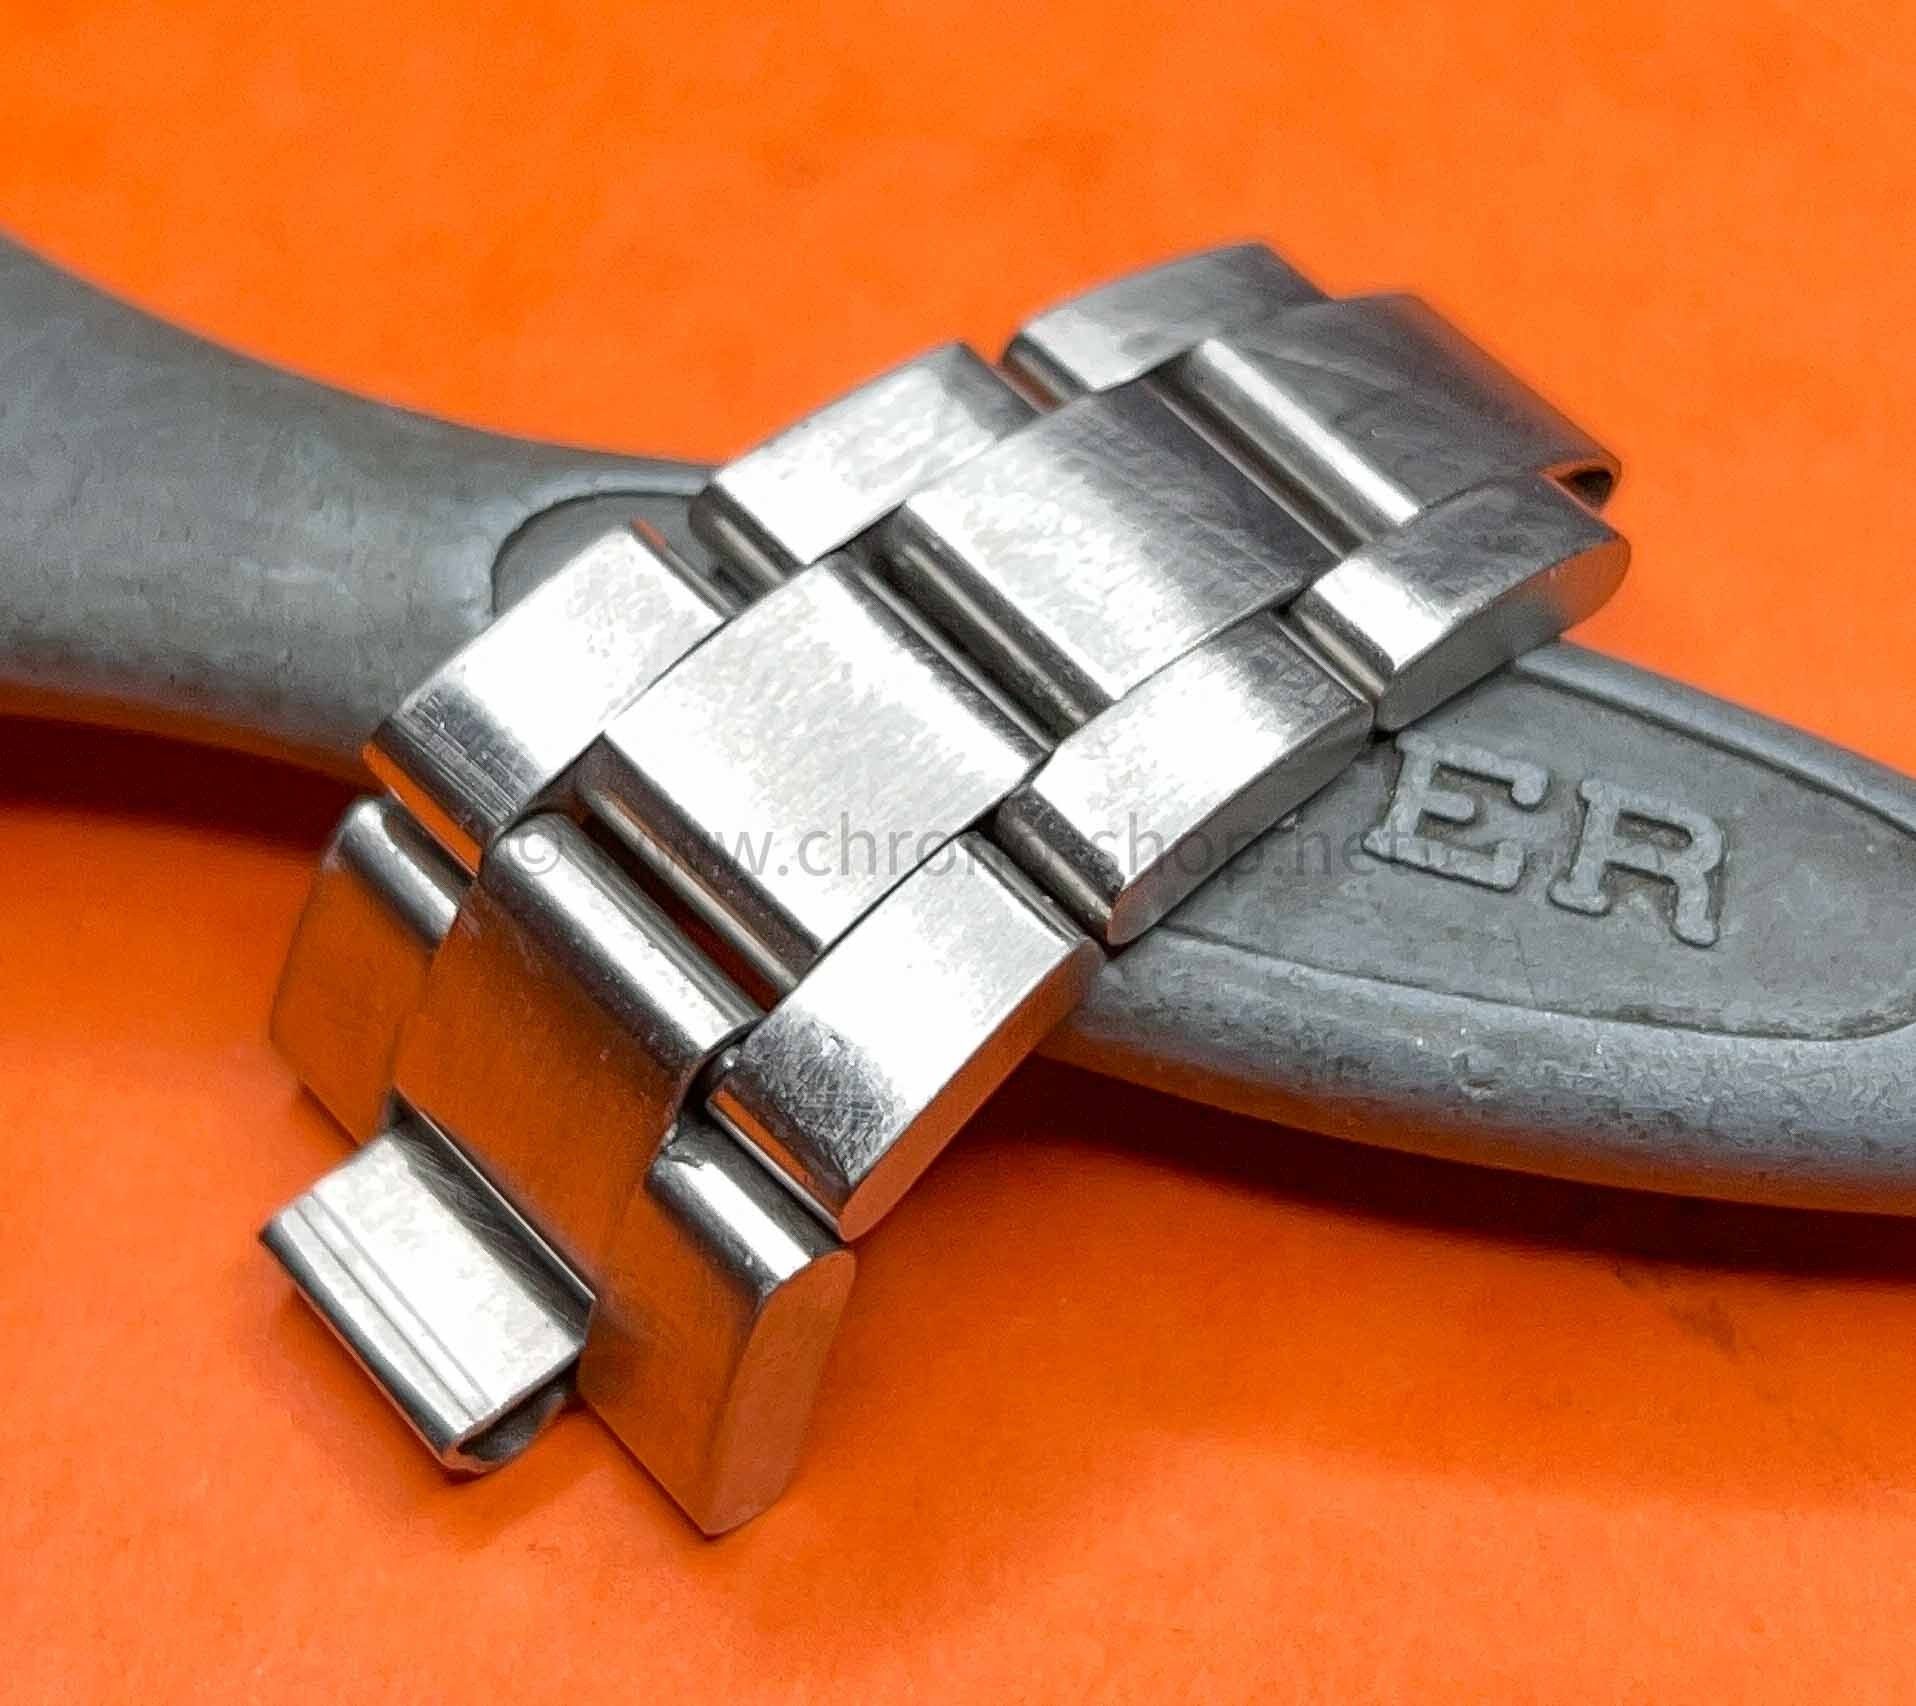 Rolex 93150 parts Oyster bracelet links bands spares Rolex Submariner 5512,5513,1680,168000,16800,14060,16760,16610